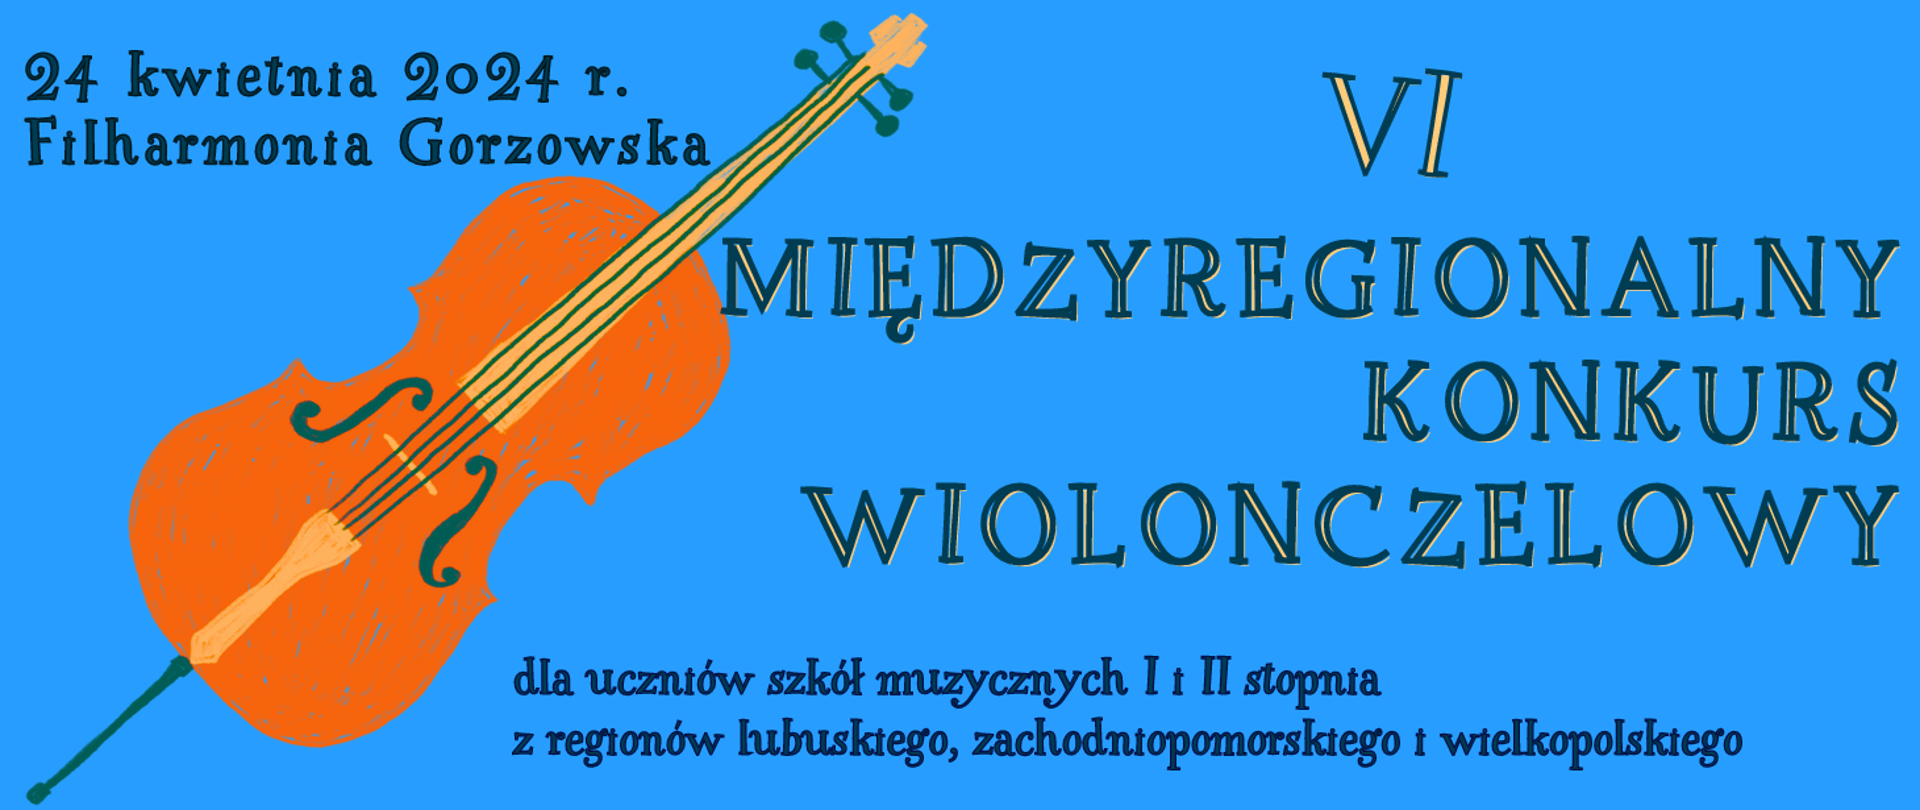 Zdjęcie przedstawia napis 6 MIĘDZYREGIONALNY KONKURS WIOLONCZELOWY dla uczniów szkół muzycznych I i II stopnia z regionu lubuskiego, zachodniopomorskiego i wielkopolskiego